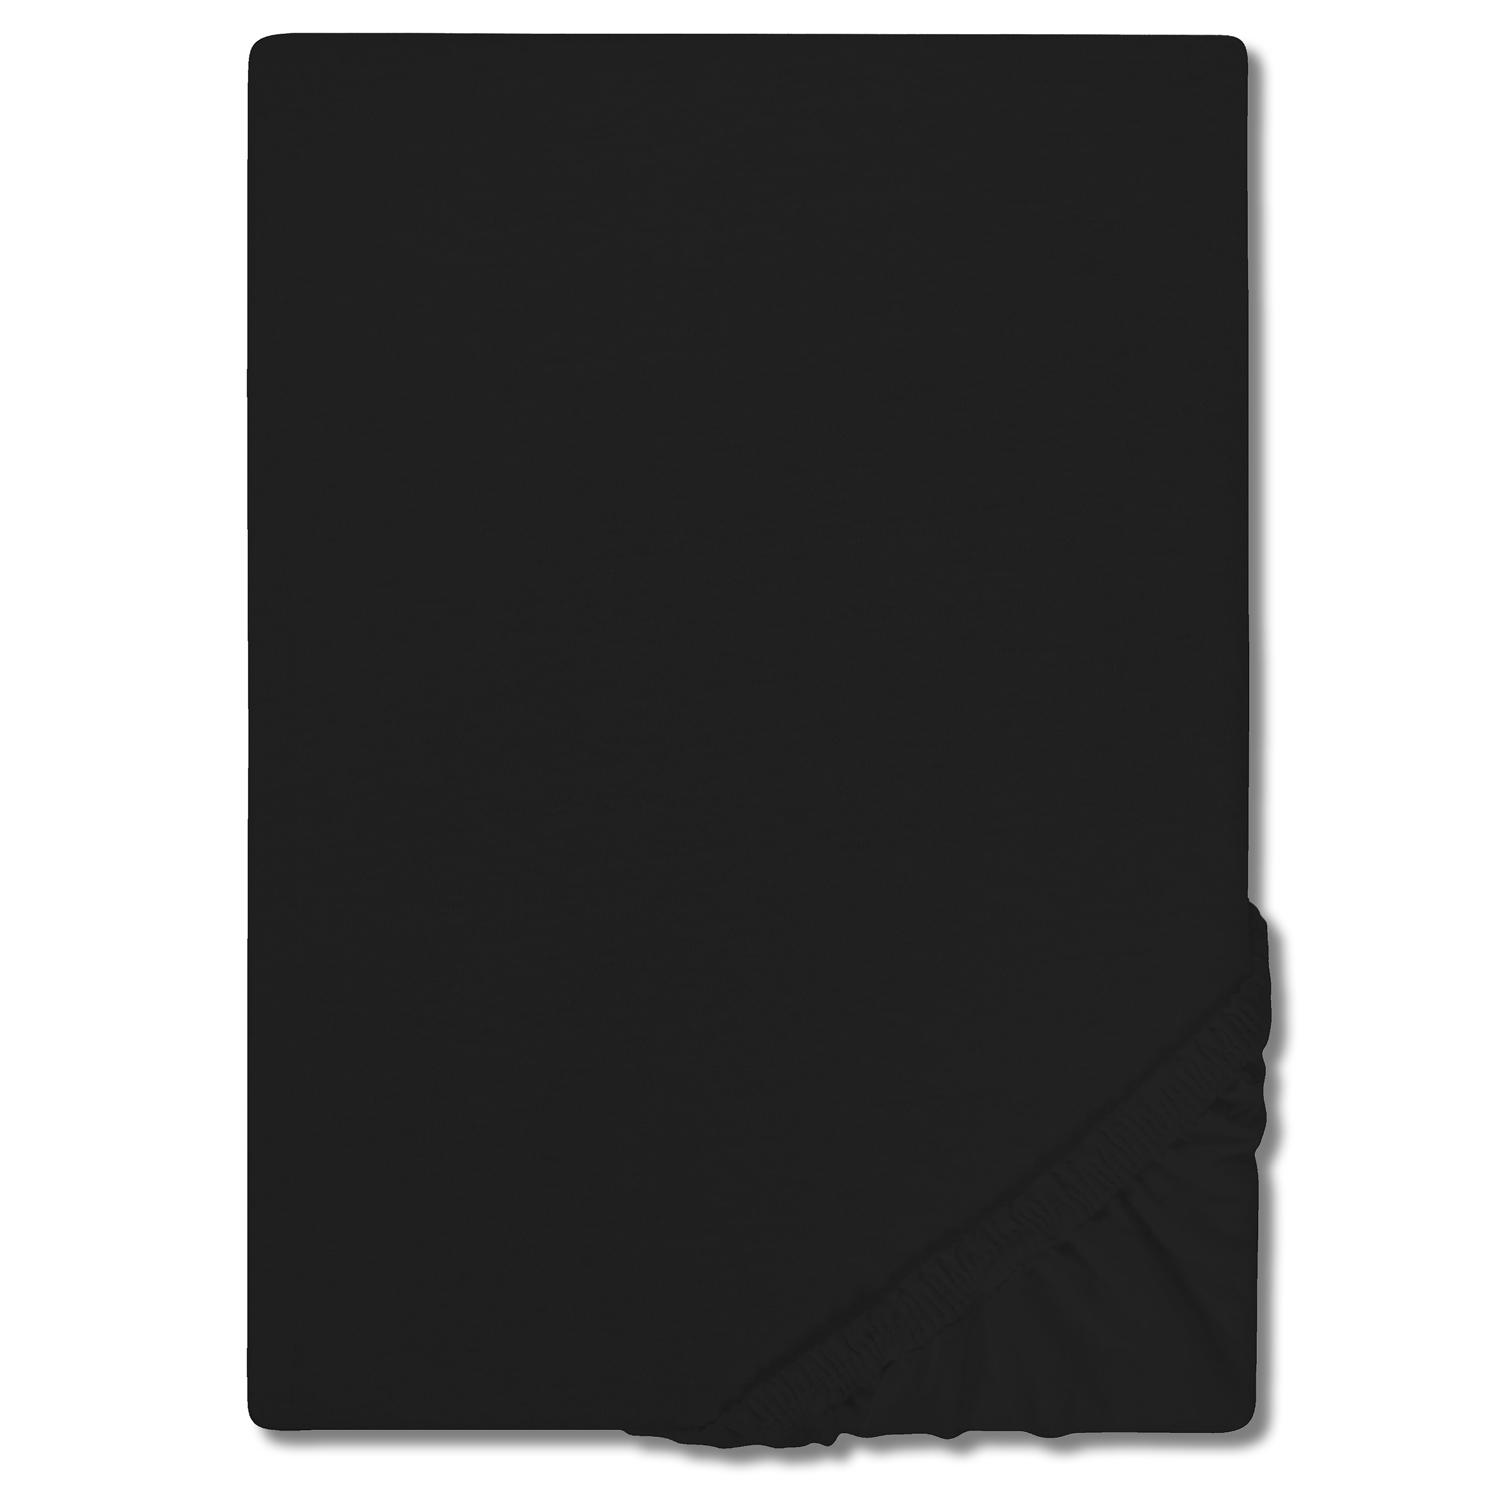 "CloudComfort Basic" pagrindinis paklodės lakštas, juodas, elastingas, juodas 90 x 190 - 100 x 200 cm